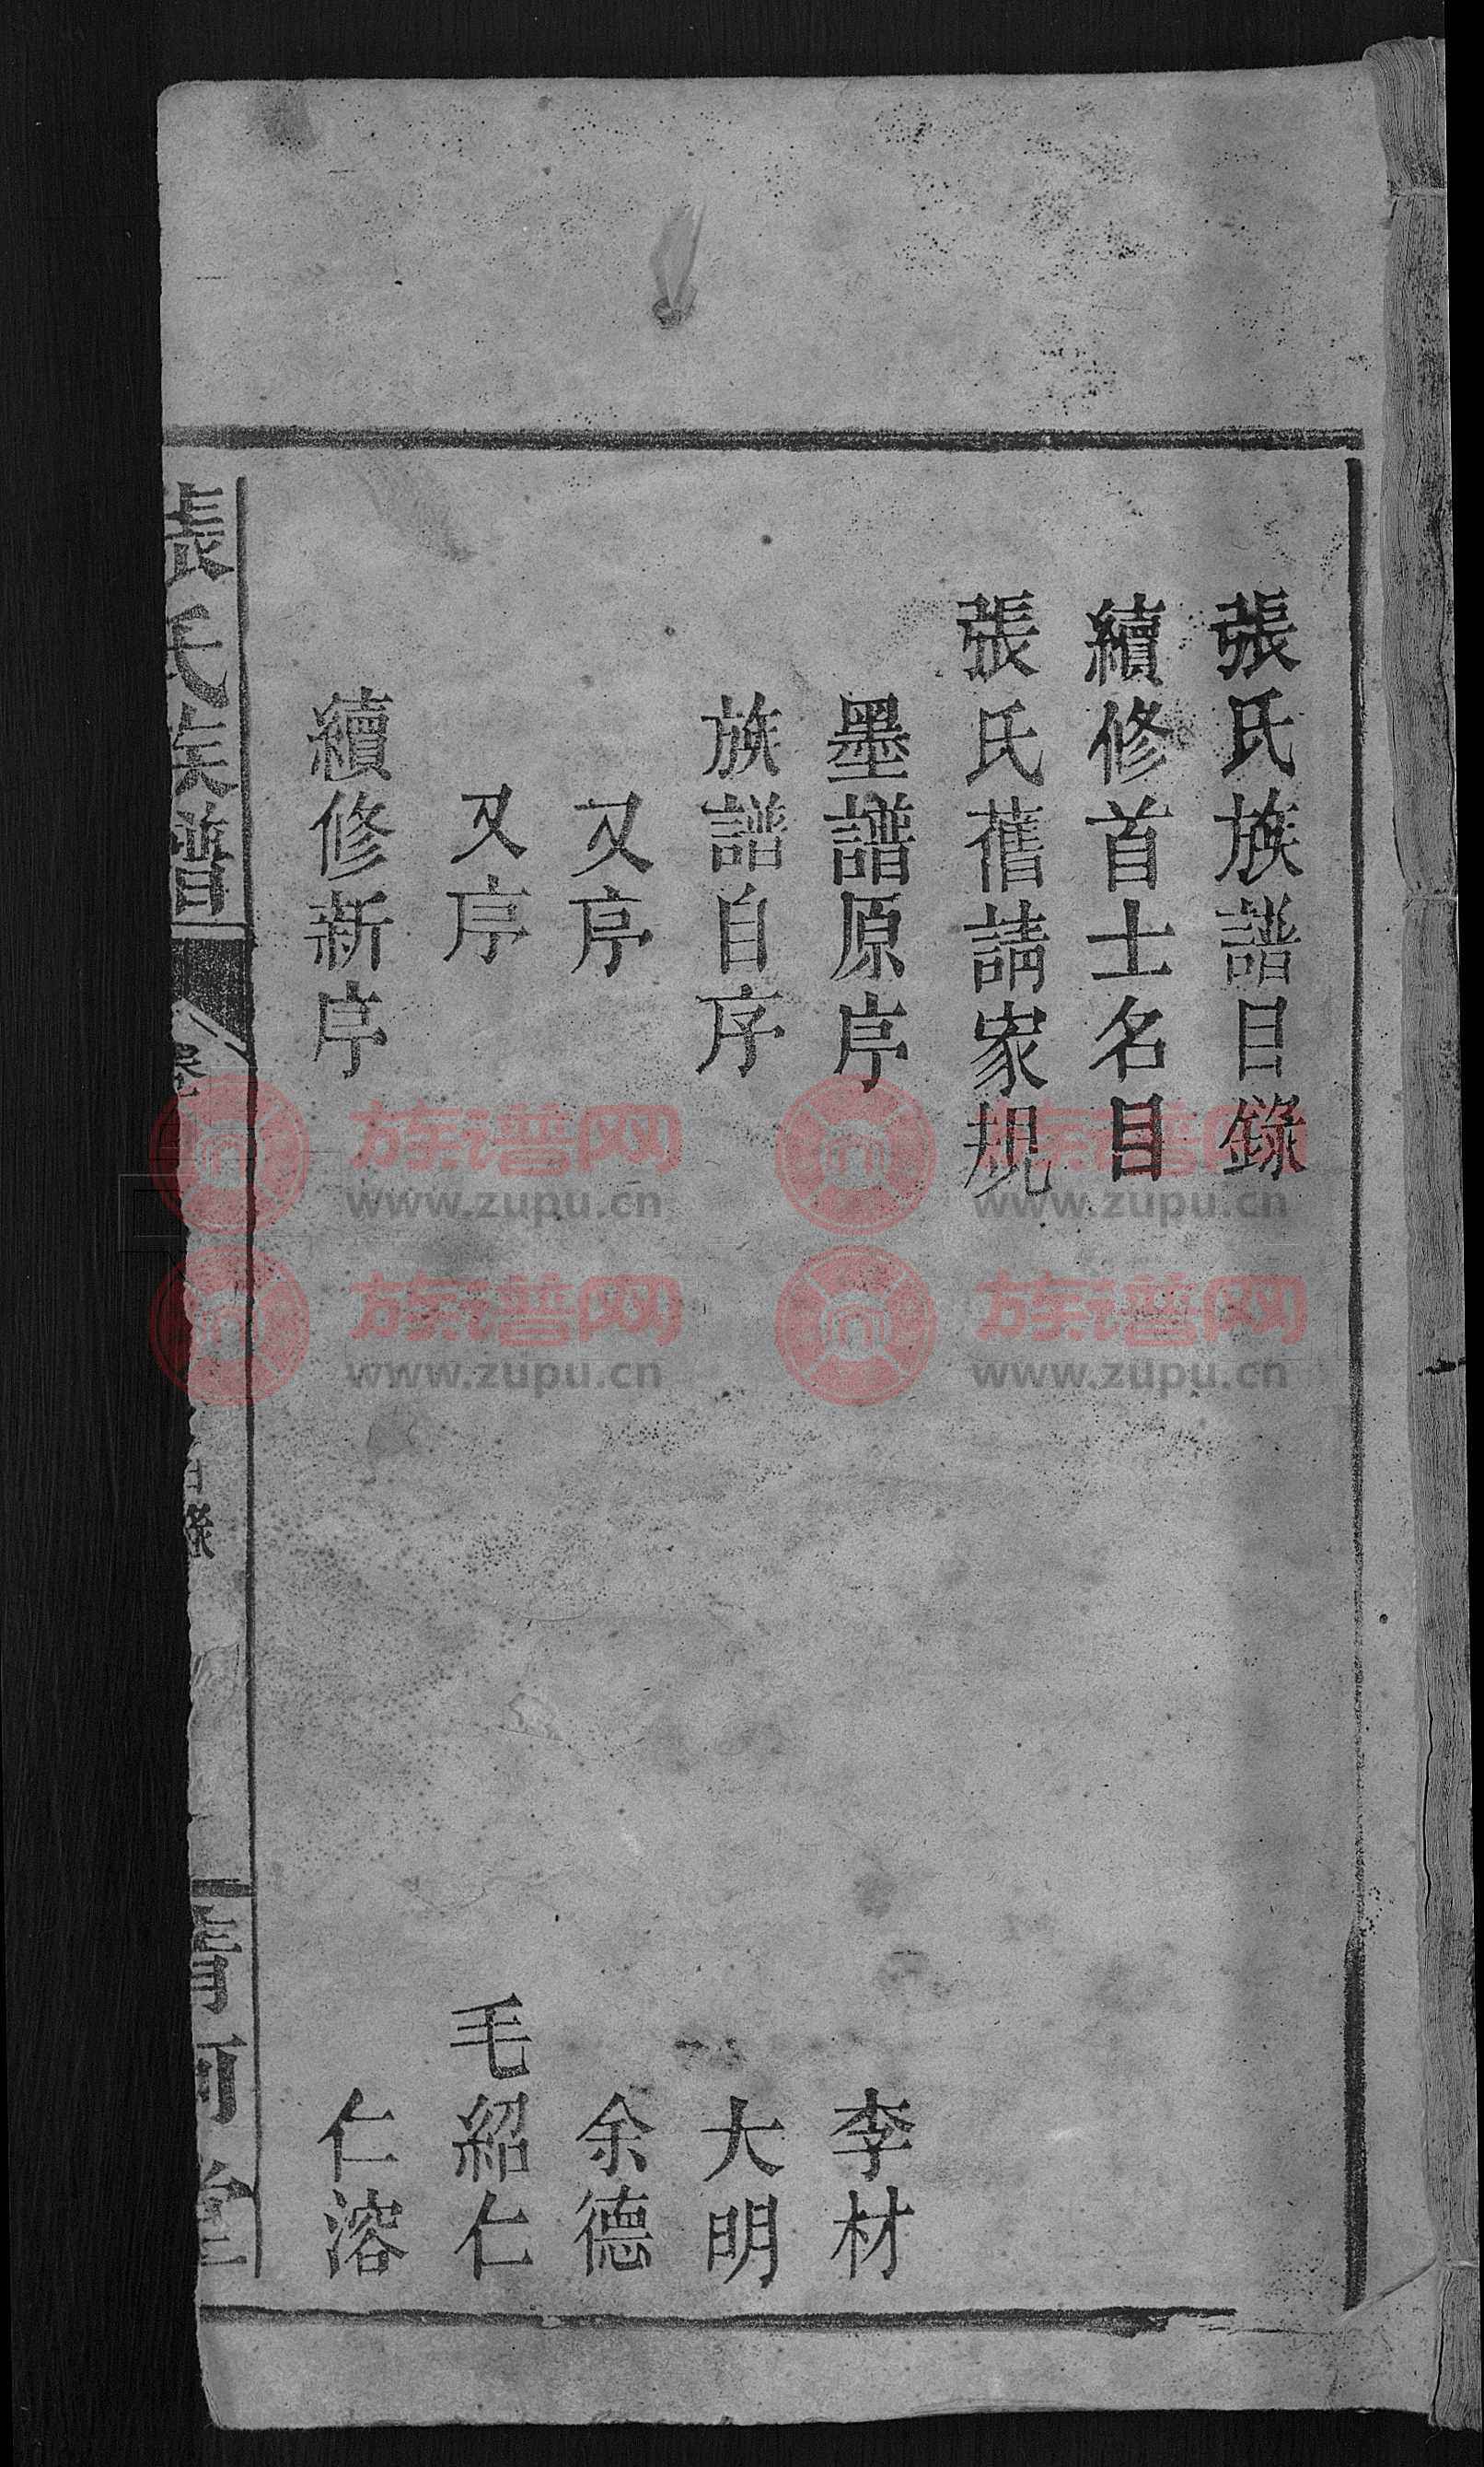 清河堂张氏族谱 [6卷,首3卷]第1本 - 张氏堂号字辈